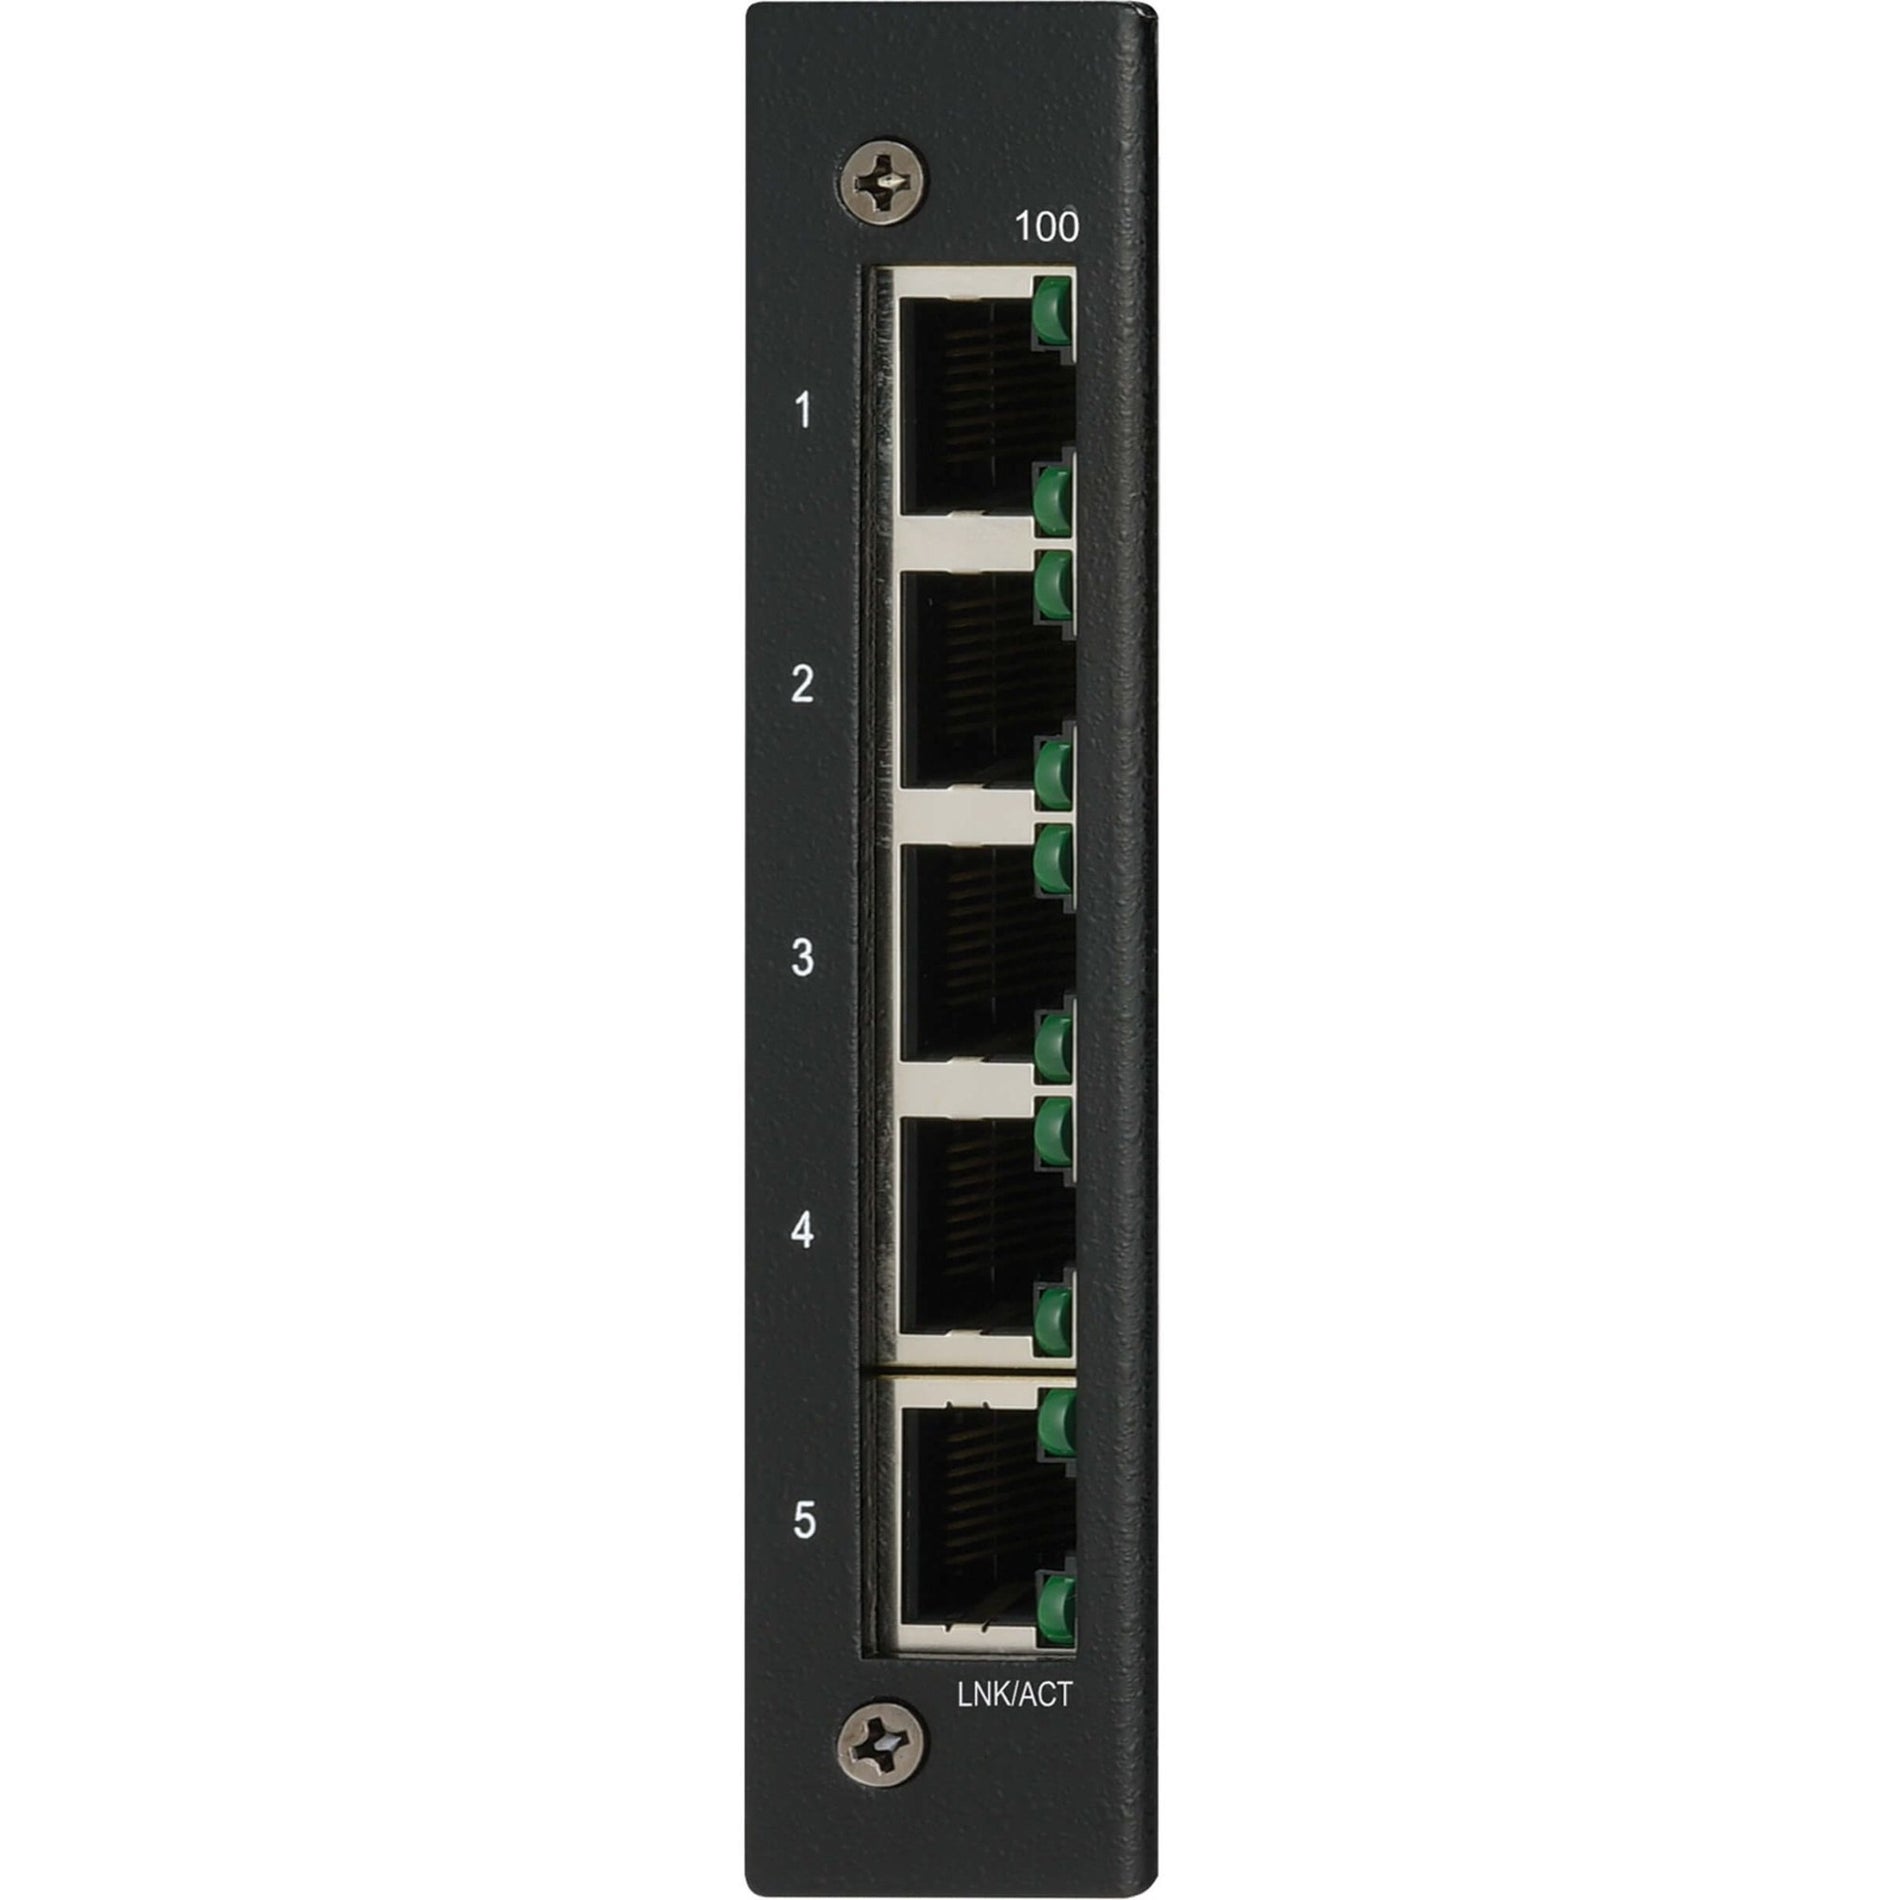 Tripp Lite NFI-U05 Ethernet Switch, Unmanaged 5-Port Industrial DIN Mount 10/100 Mbps